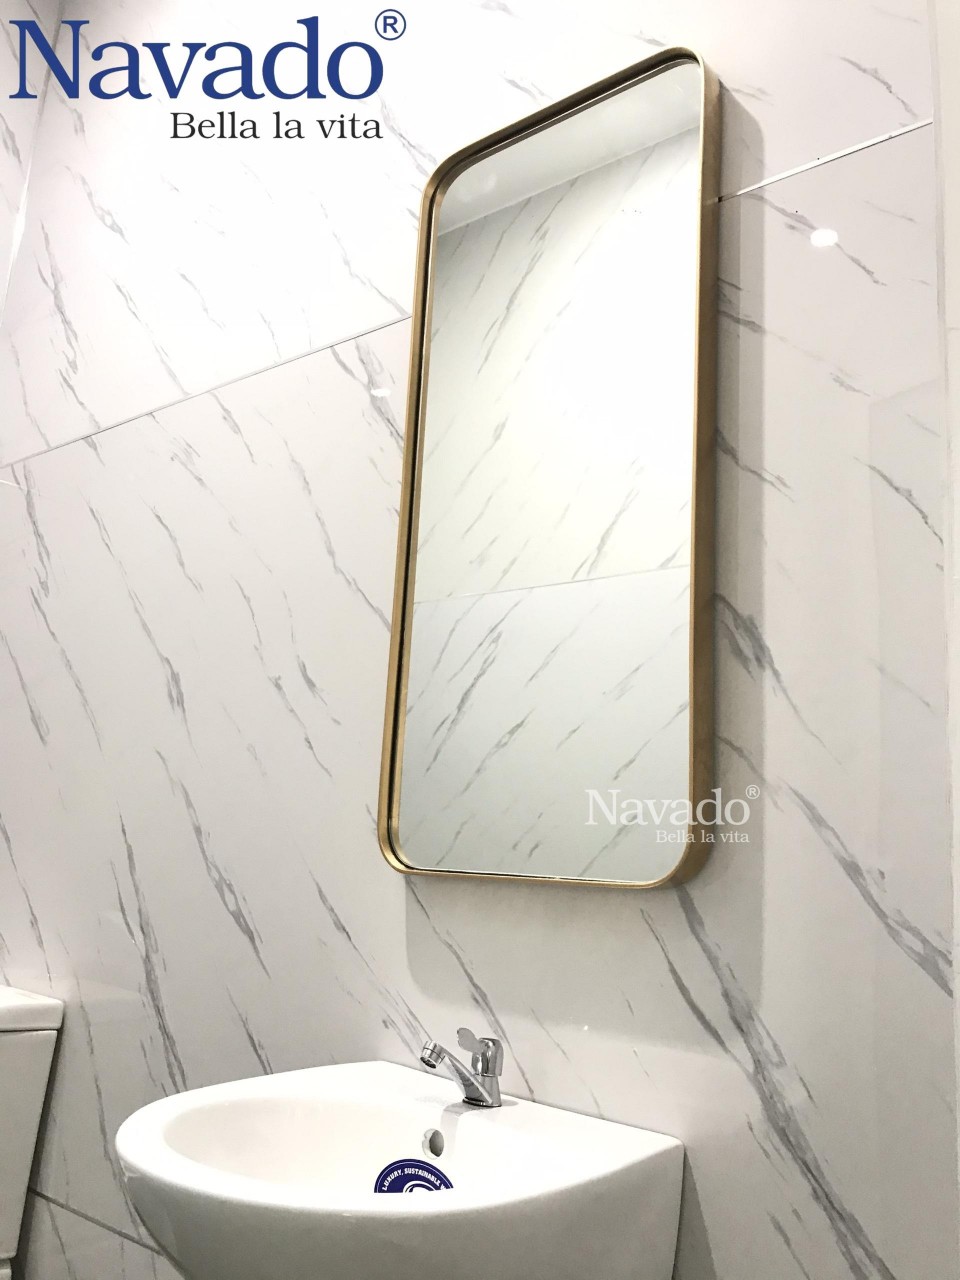 Bạn muốn tìm kiếm một gương vành inox vàng cho phòng tắm của mình? Hãy xem qua hình ảnh dưới đây. Chúng tôi cung cấp những sản phẩm gương cao cấp với vành inox vàng chắc chắn và sáng bóng, mang lại một nét đẹp sang trọng và hiện đại cho phòng tắm của bạn.